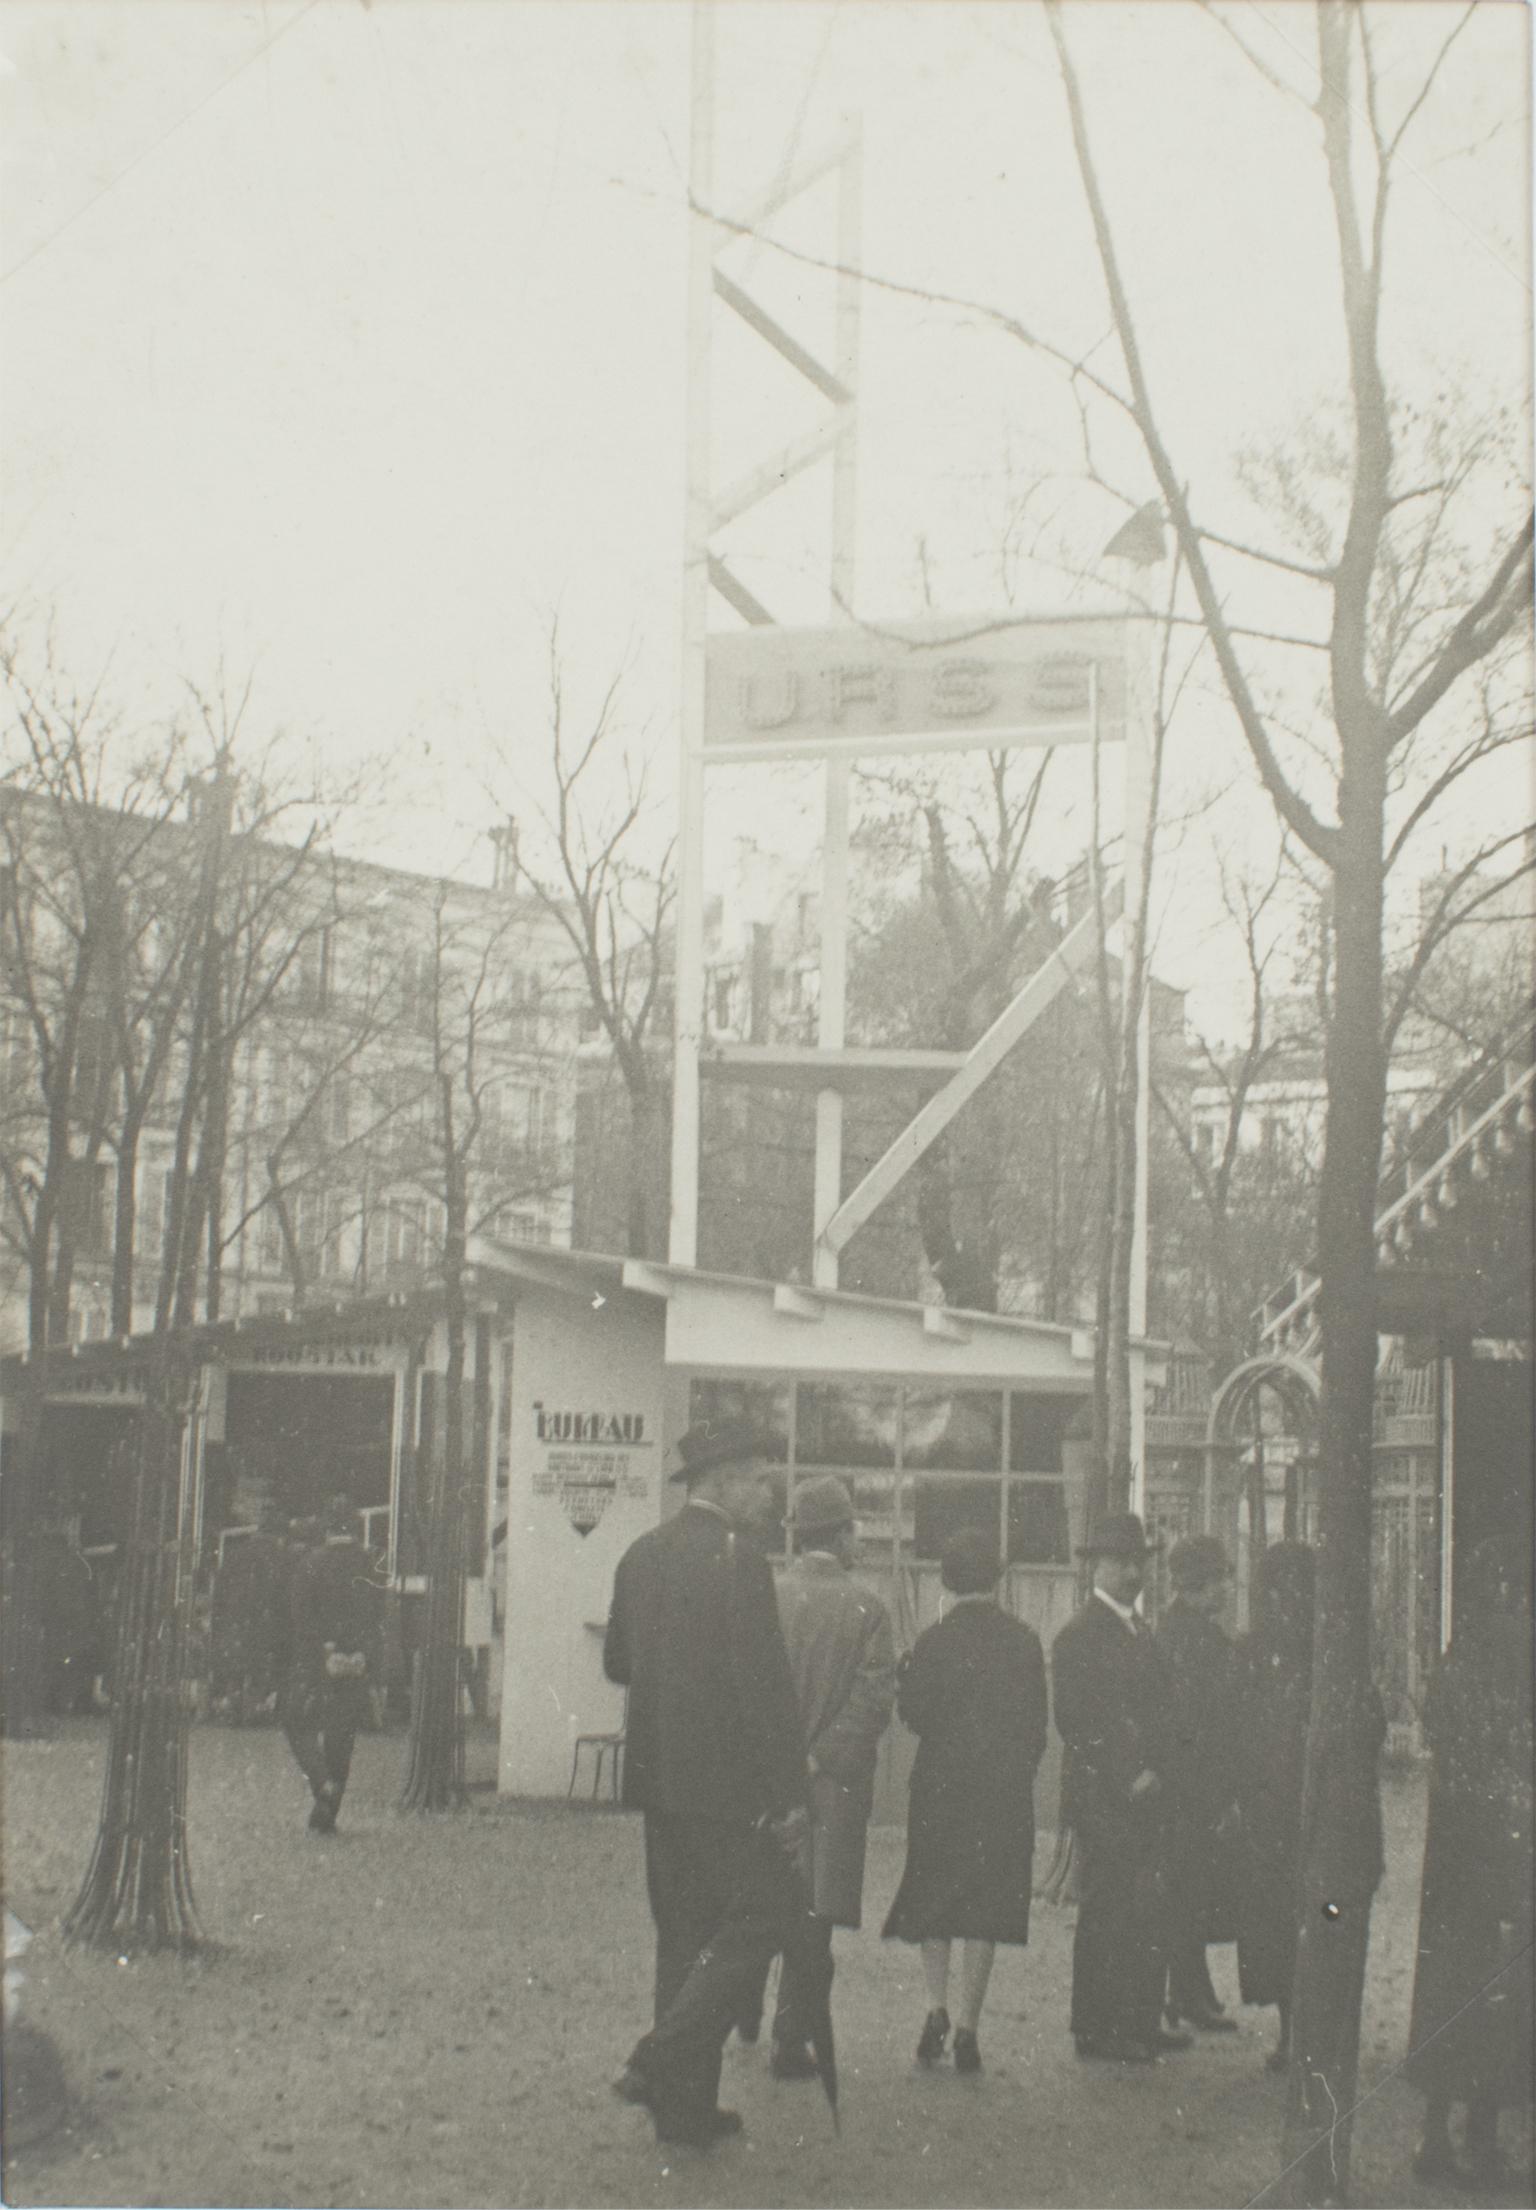 Unknown Landscape Photograph - Paris, Decorative Art Exhibition 1925, The Russian Pavilion, B and W Photography